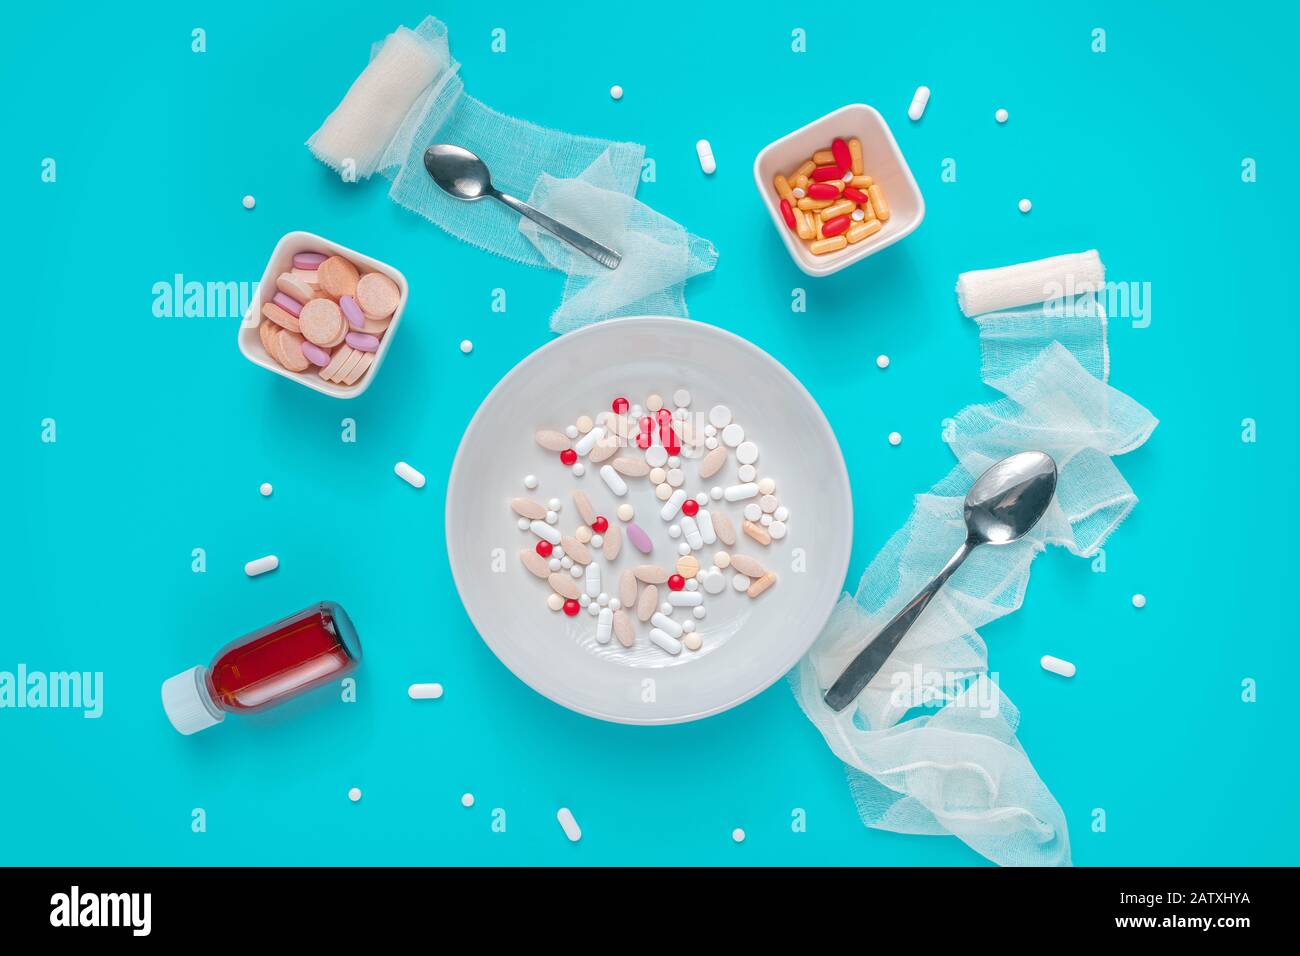 Pilules et abus de drogues concept vue de dessus plat avec des médicaments servis comme nourriture sur fond bleu Banque D'Images